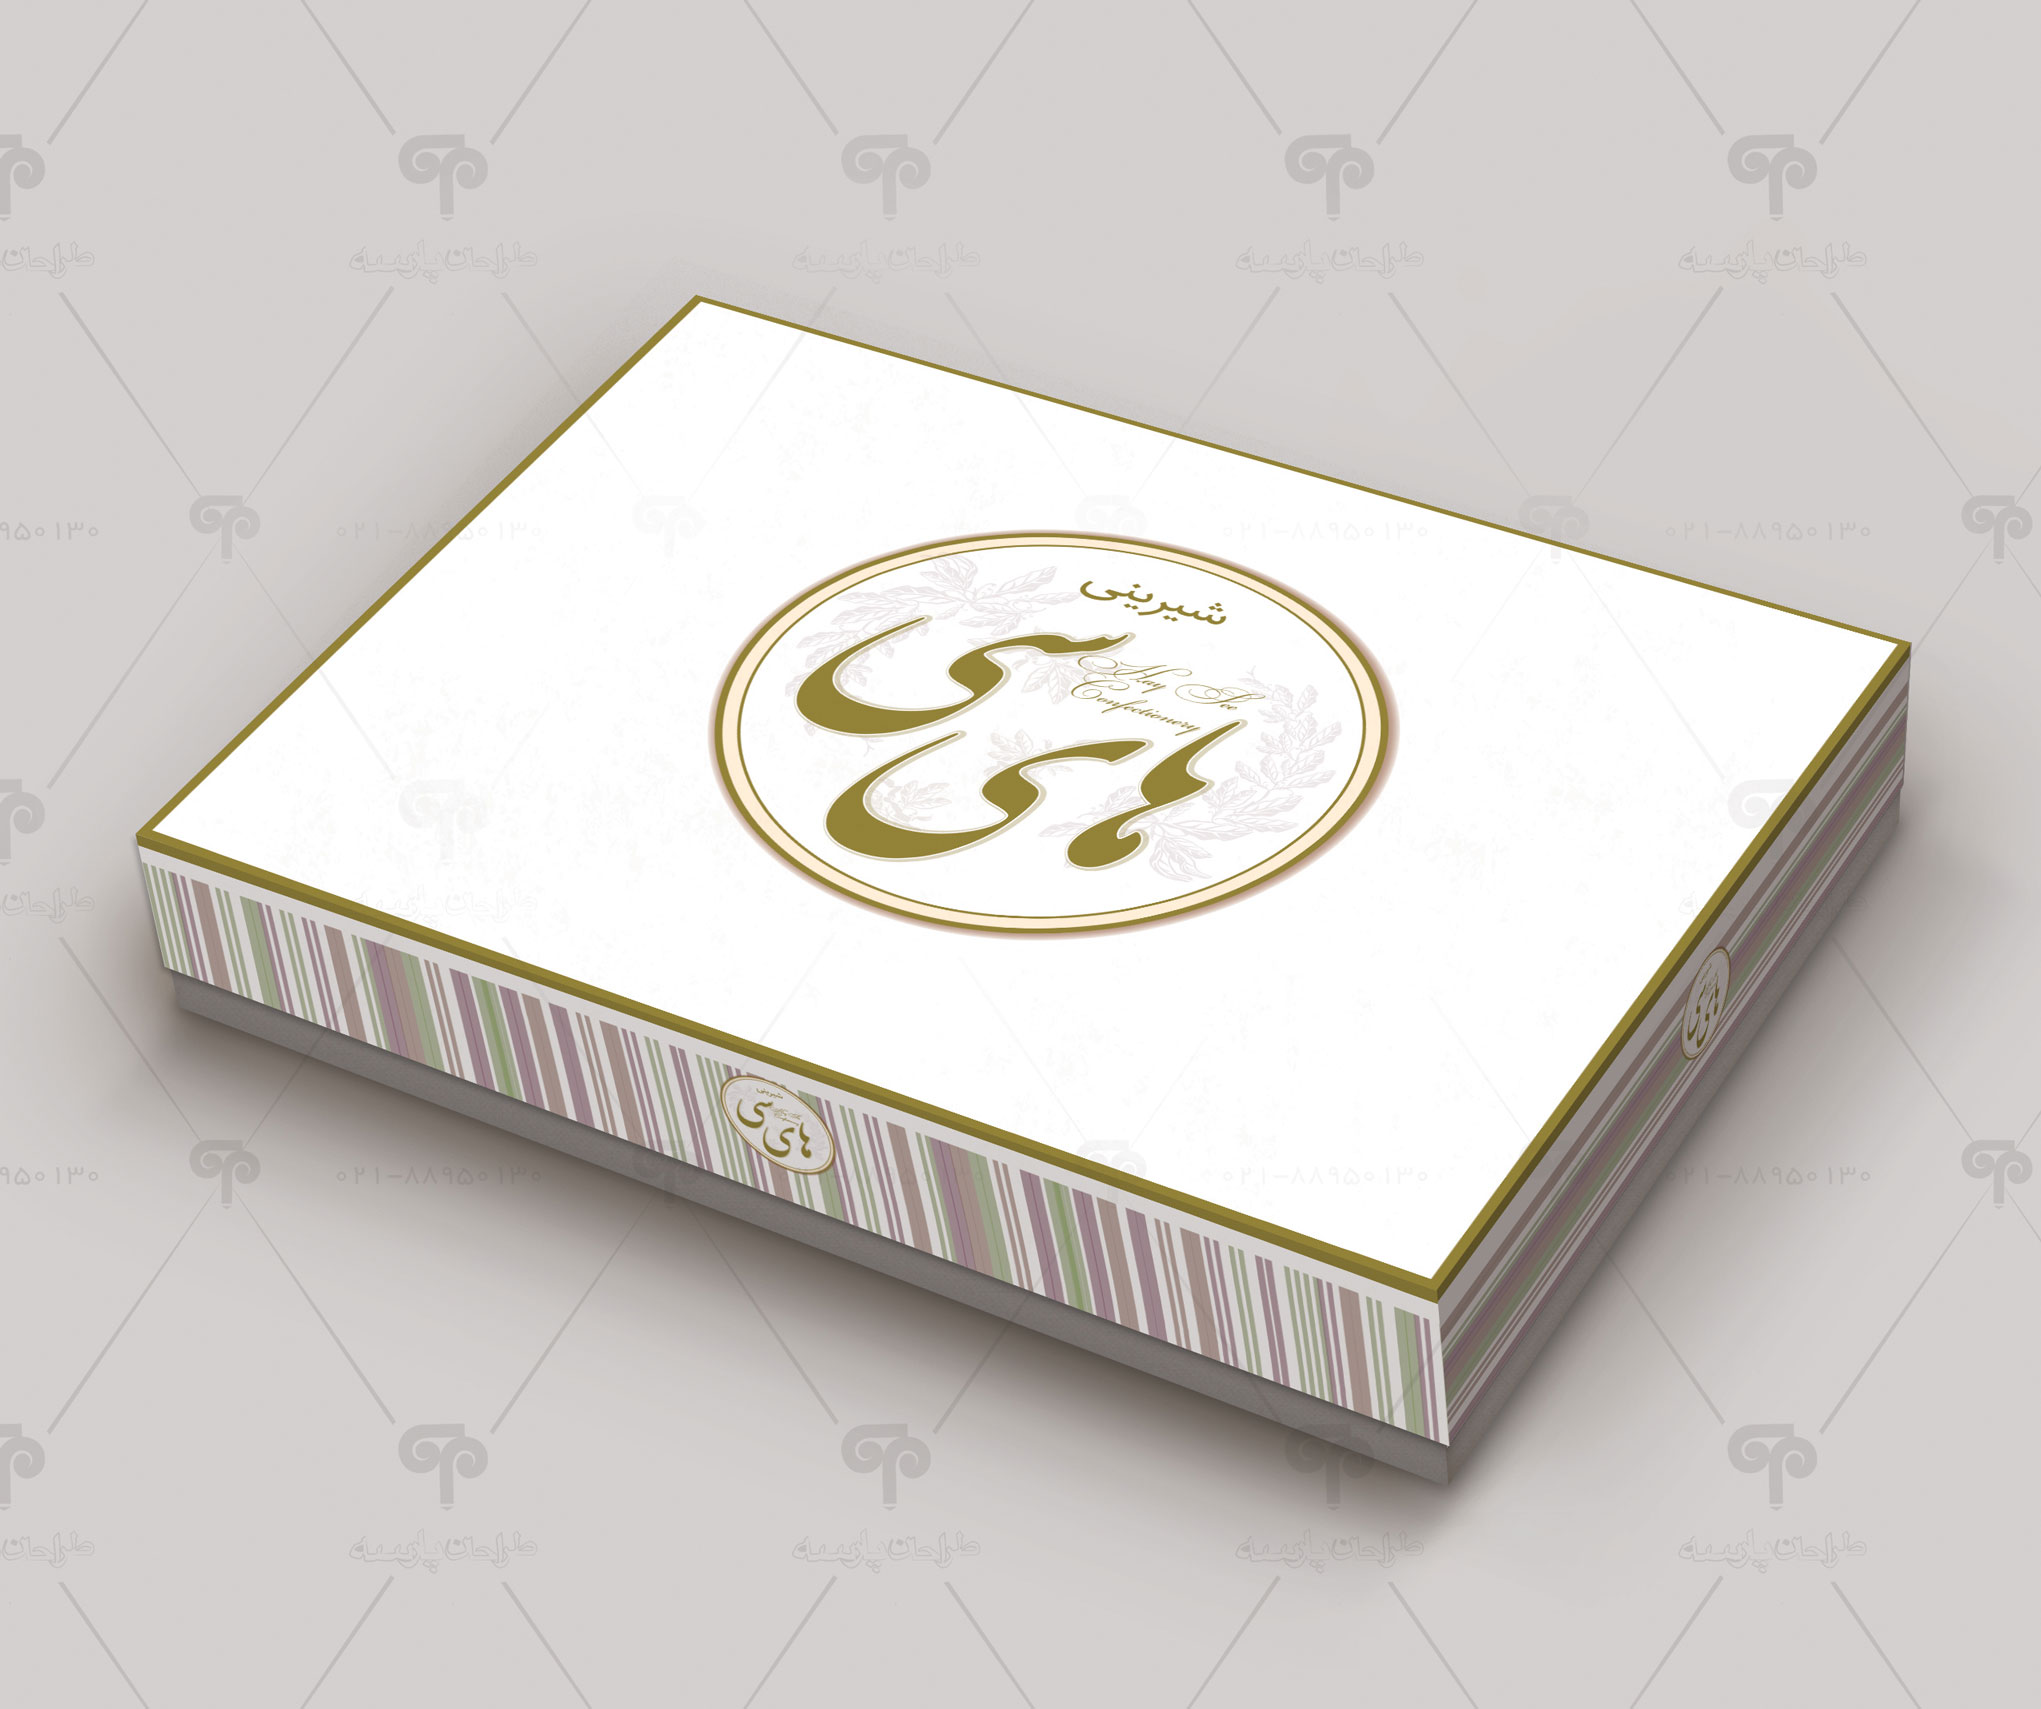 طراحی جعبه شیرینی های سی